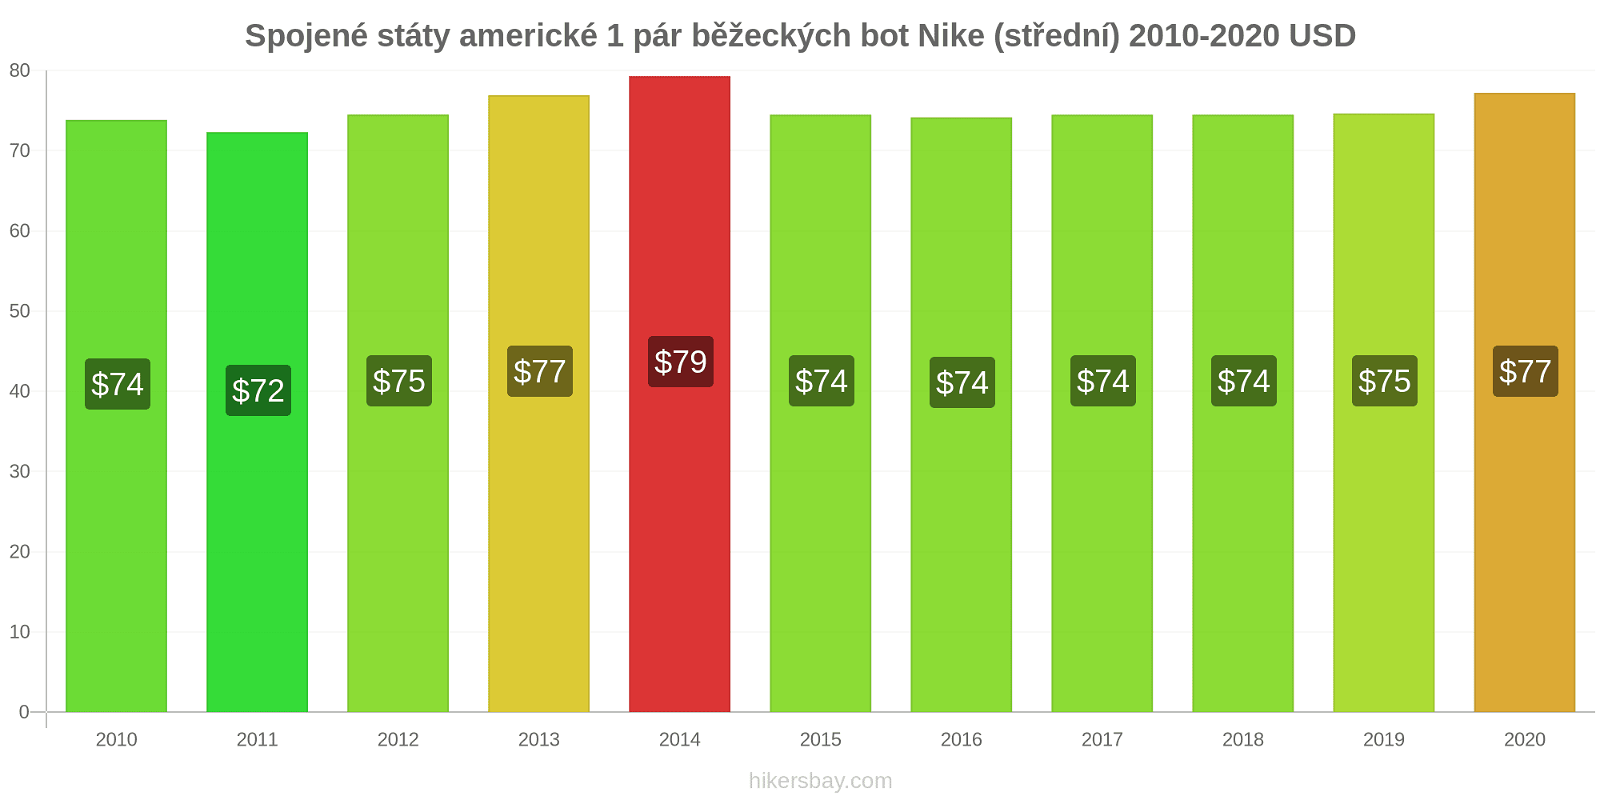 Spojené státy americké změny cen 1 pár běžeckých bot Nike (střední) hikersbay.com